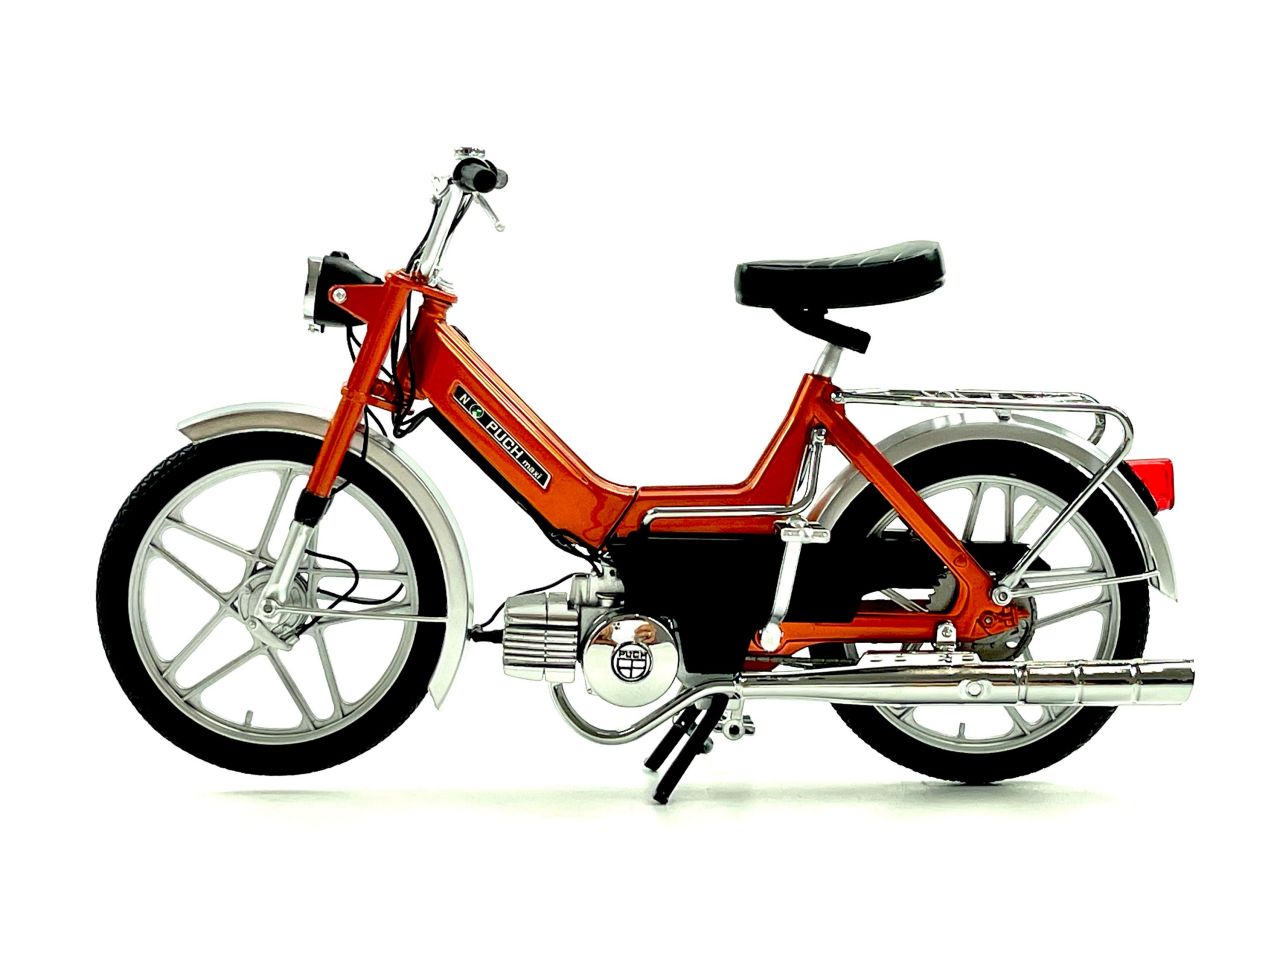 Mofa Modell Maßstab 1:10 PUCH Maxi N orange-metallic von 50cc Legends Moped von BOOL-tec